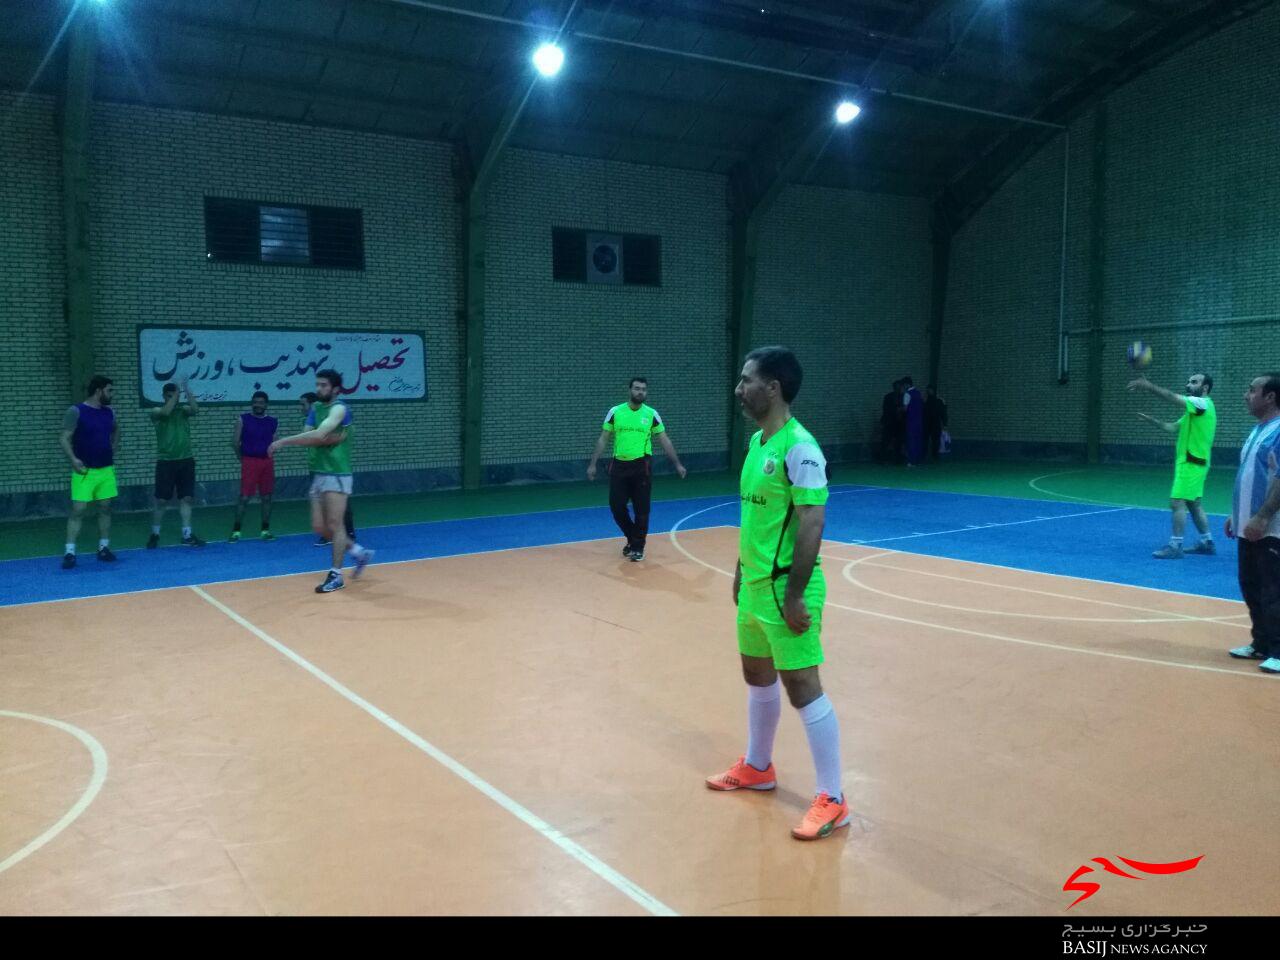 مسابقات چهار جانبه والیبال در نیر برگزار شد